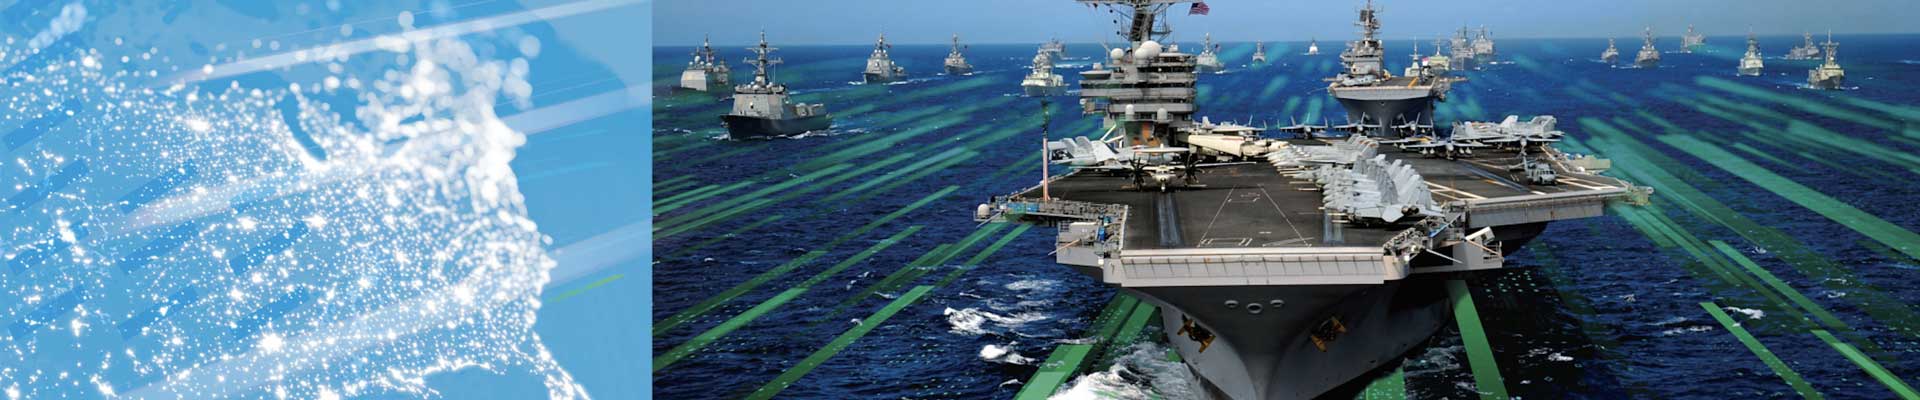 fleet of battleships on the open sea